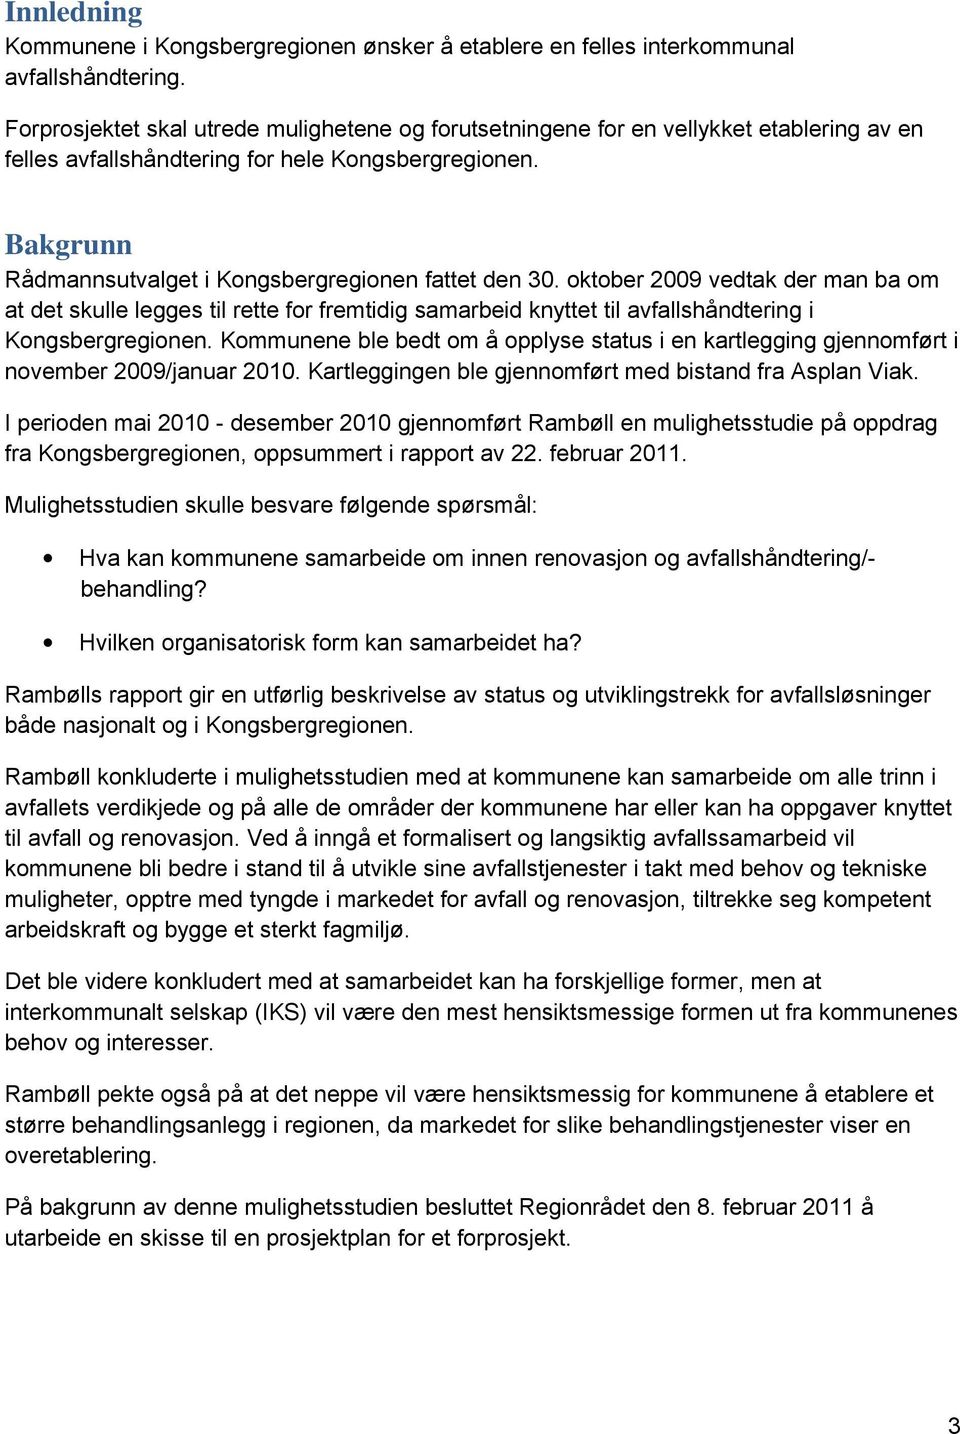 Bakgrunn Rådmannsutvalget i Kongsbergregionen fattet den 30. oktober 2009 vedtak der man ba om at det skulle legges til rette for fremtidig samarbeid knyttet til avfallshåndtering i Kongsbergregionen.